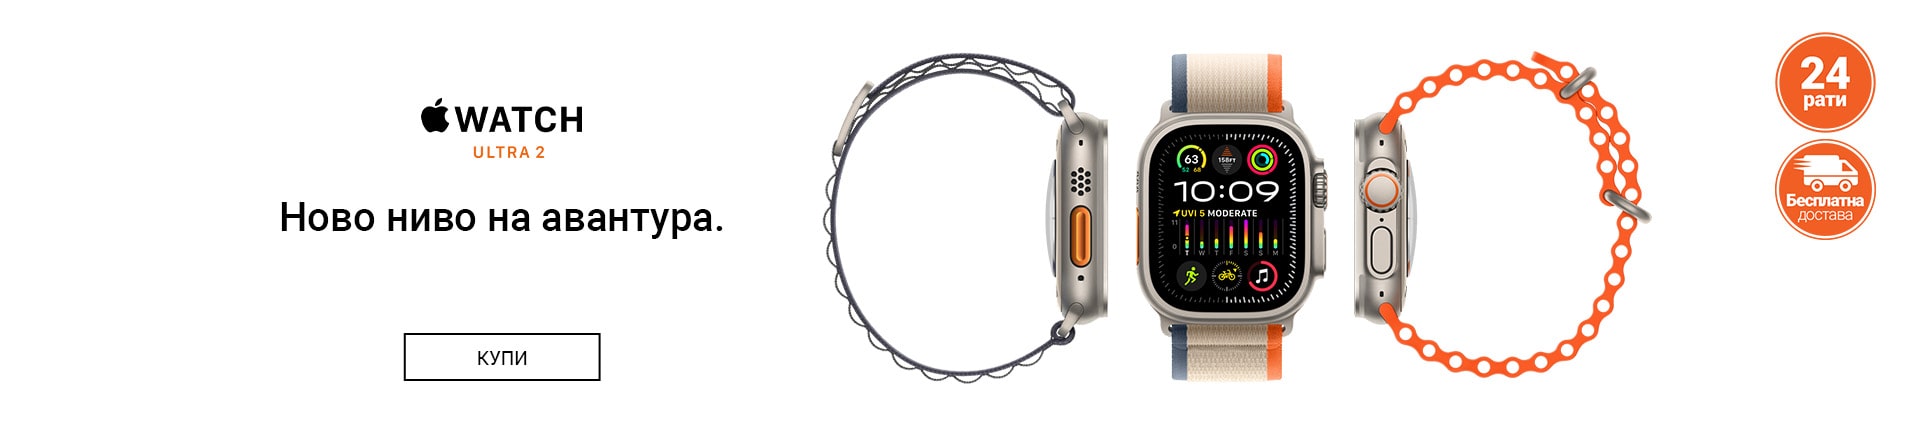 MK~Apple Watch Ultra 2 DESKTOP 1200 X 436-min.jpg